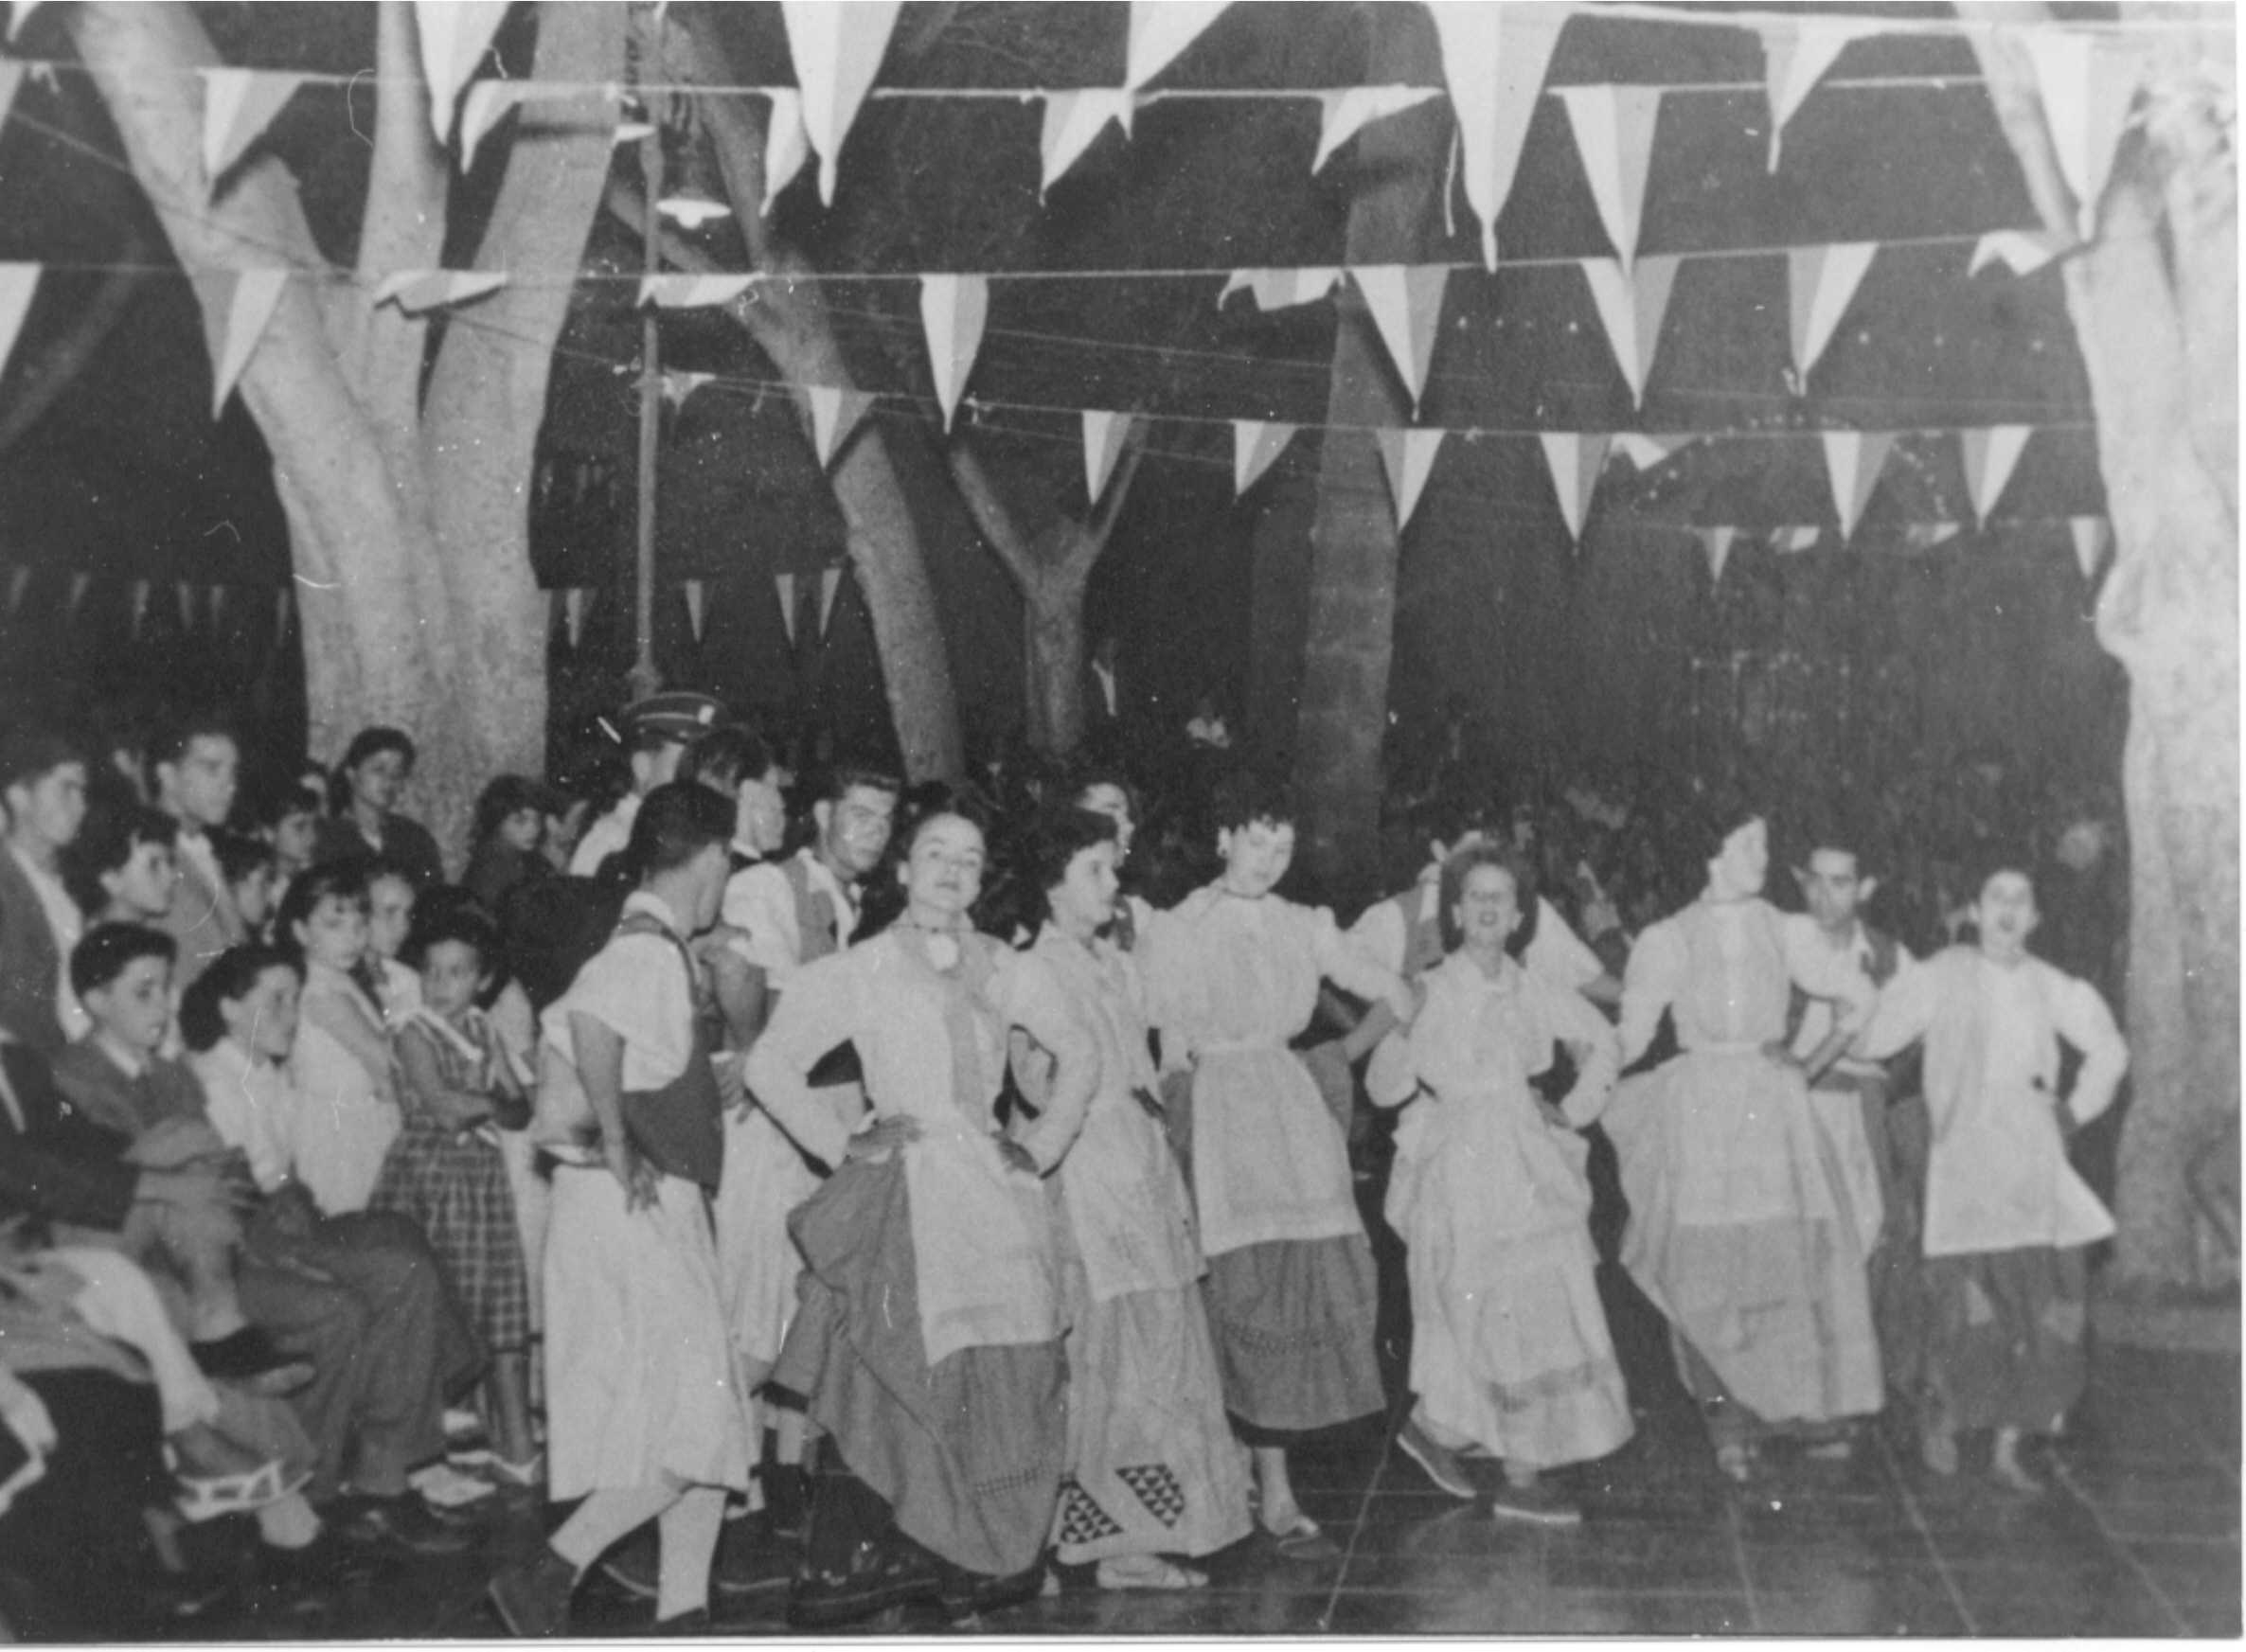 La agrupación “Princesa Tenesoya”, del maestro Ignacio Rodríguez en las Fiestas de Santiago.
( 1955 ).